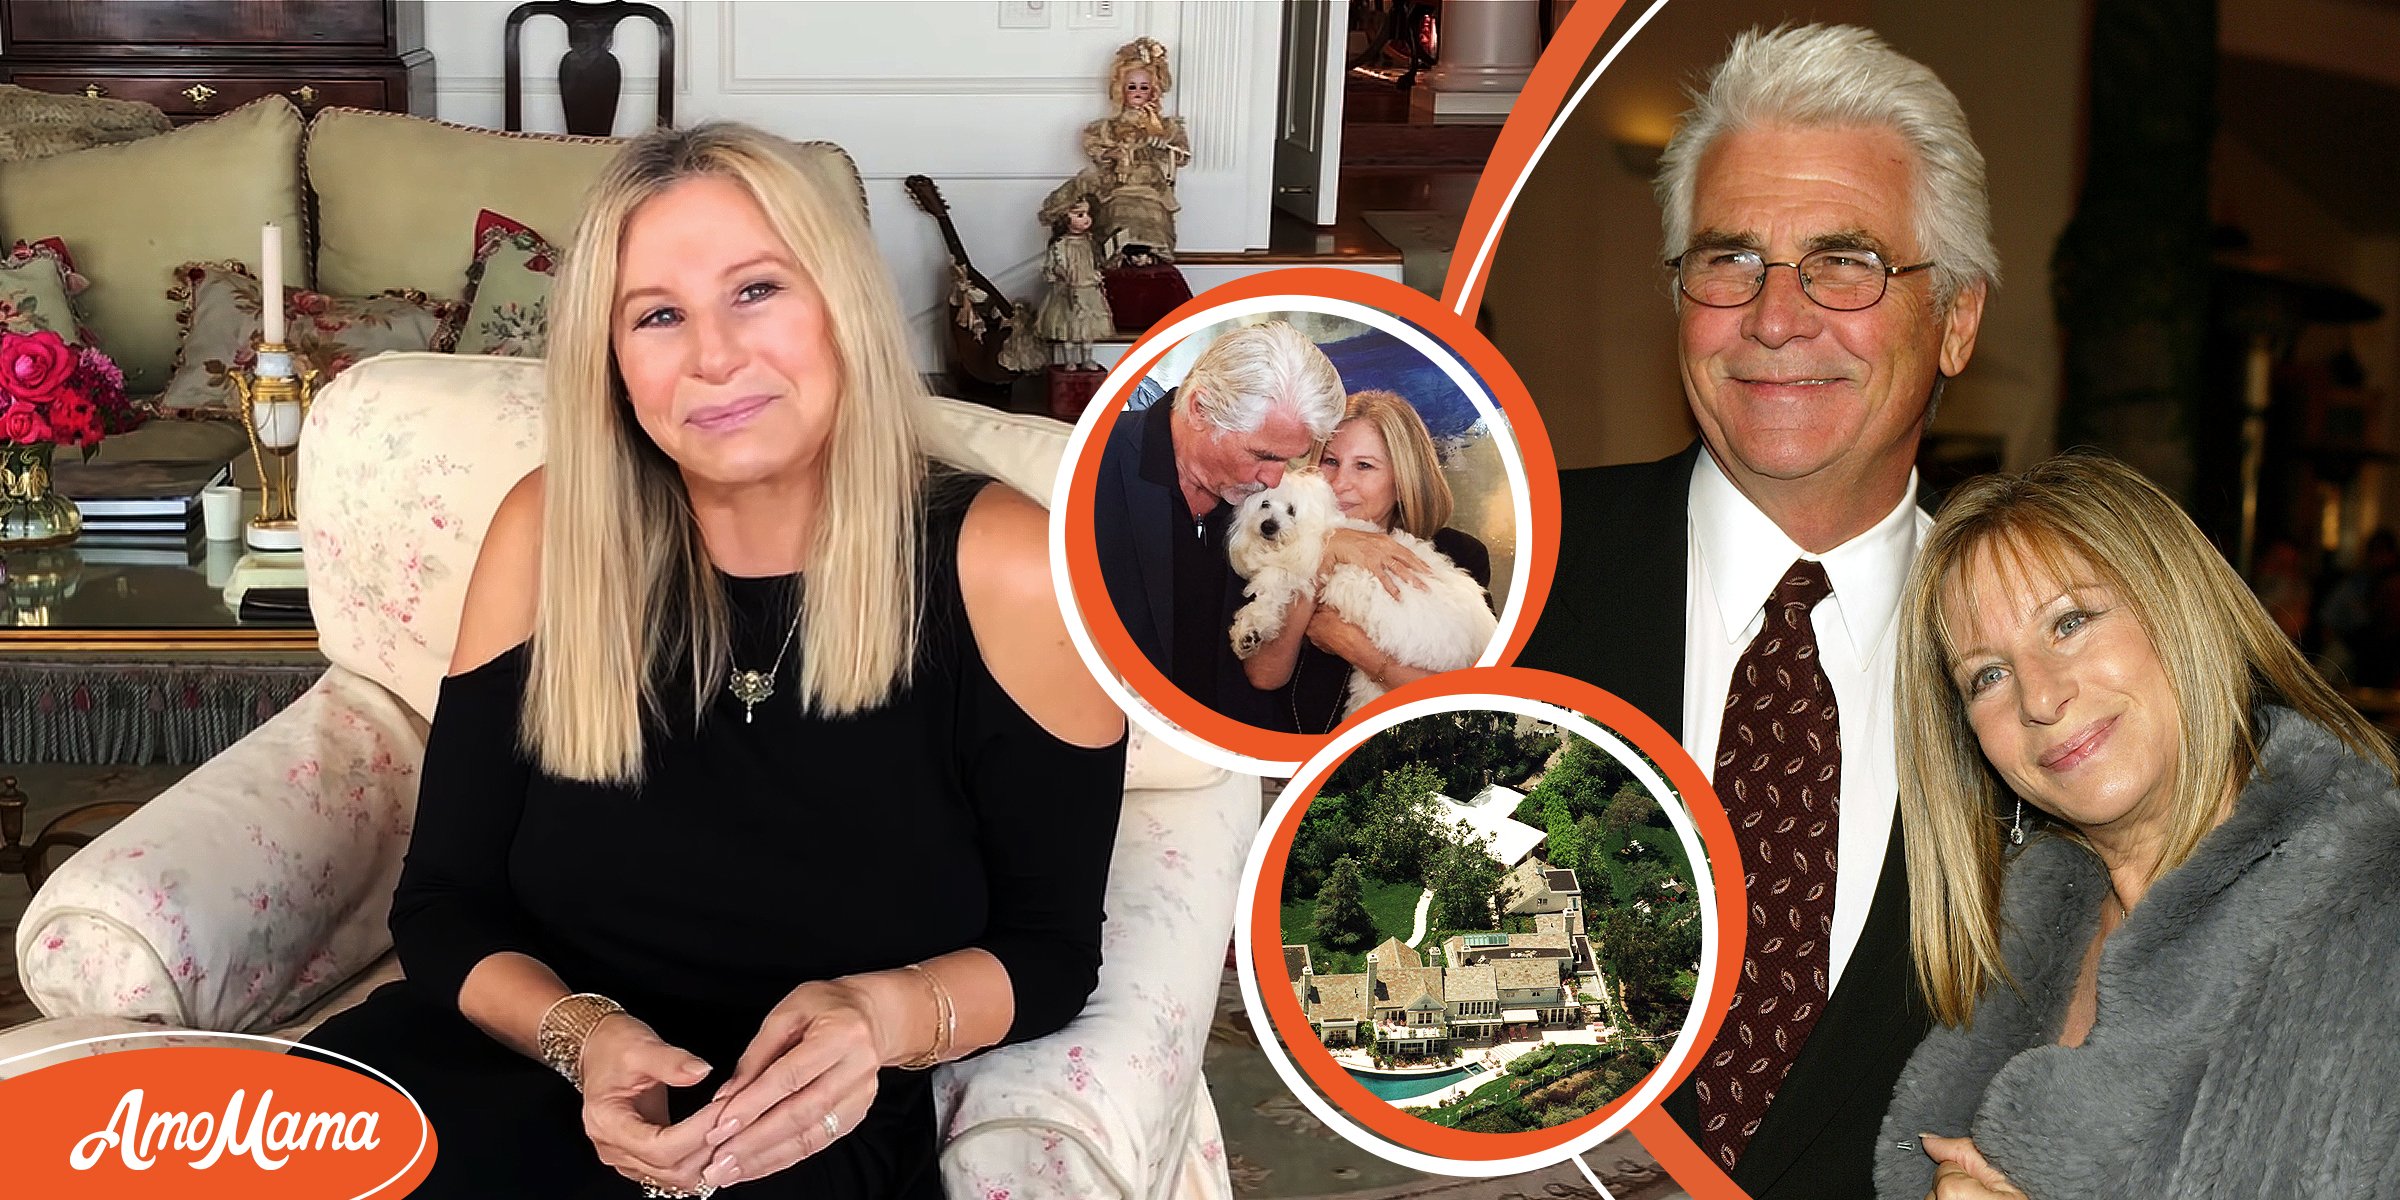 Barbra Streisand a consolidé son mariage avec son époux de 24 ans dans une maison de rêve qu’elle a mis 11 ans à acheter